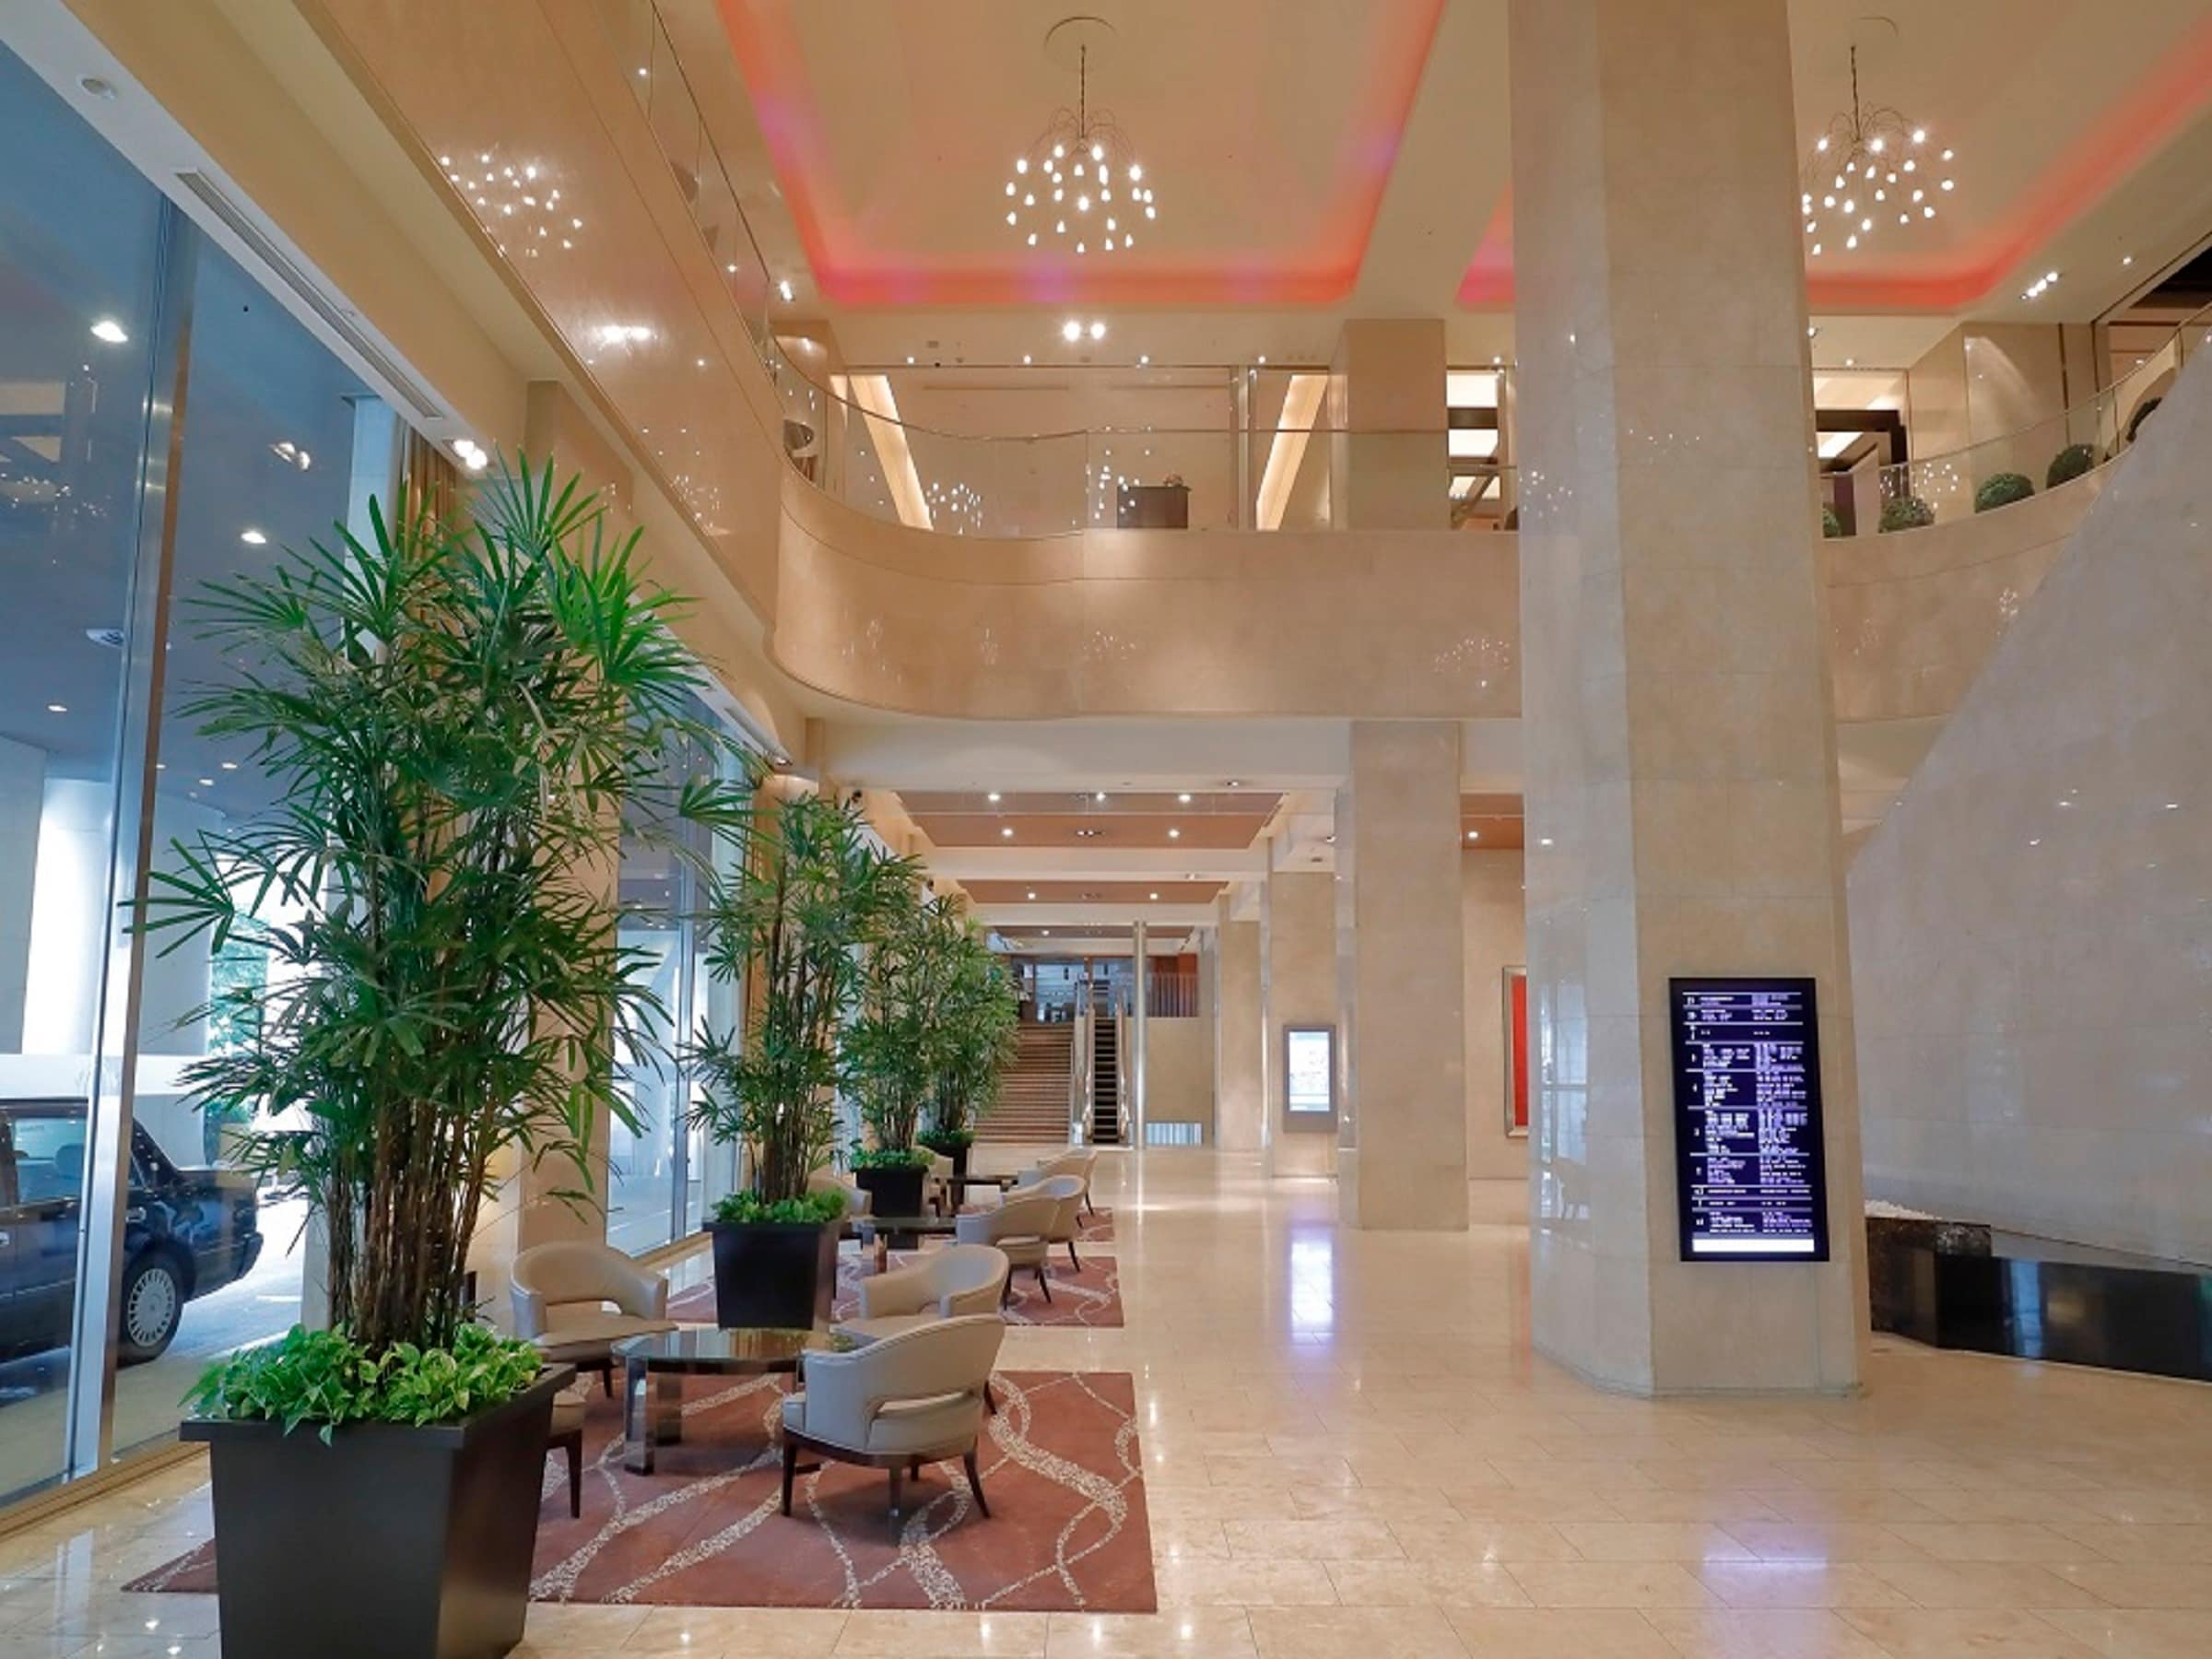 1st floor lobby